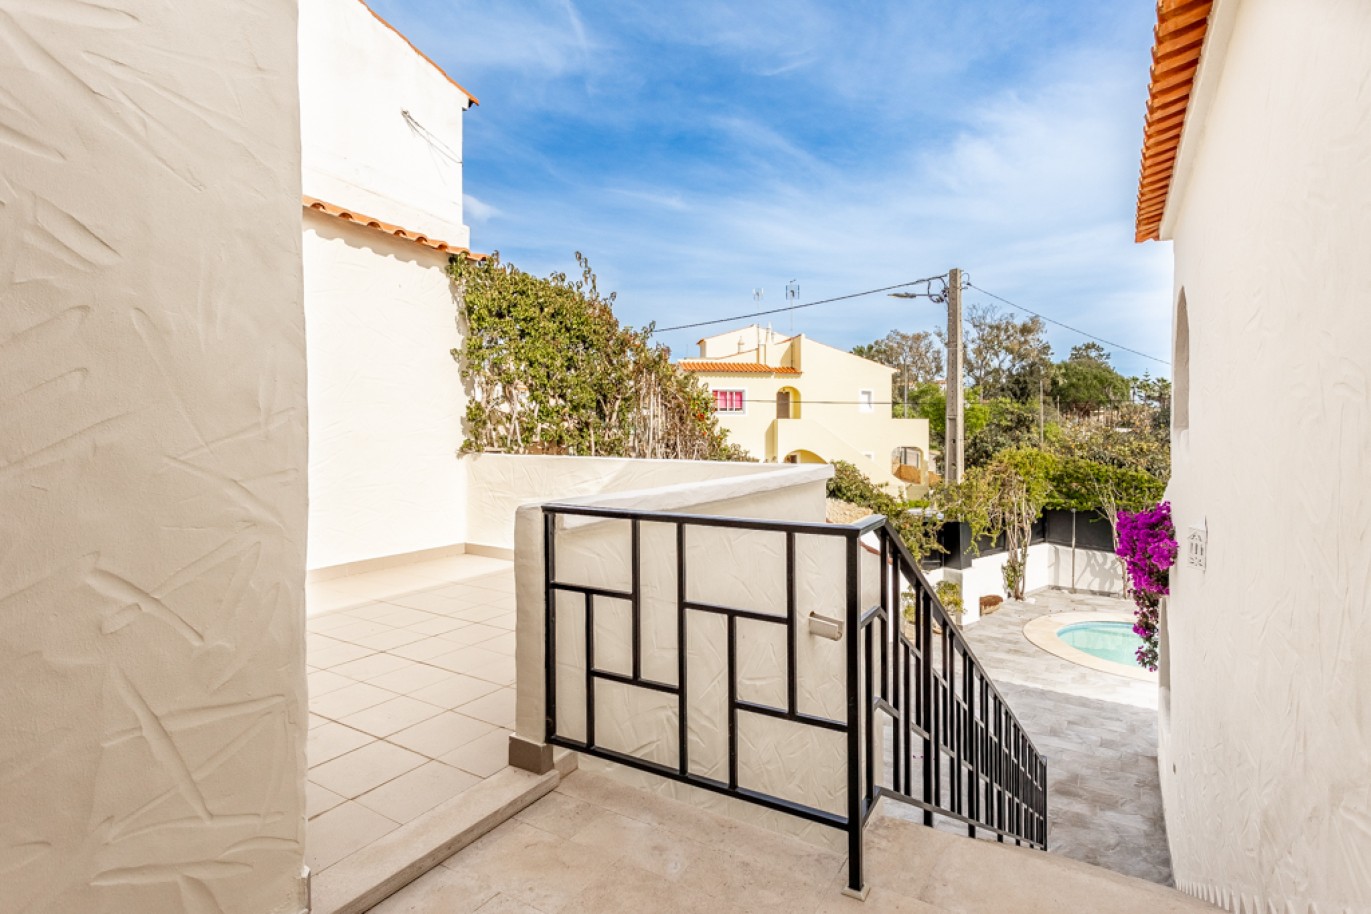 Moradia V7 com piscina, para venda, em Porches, Algarve_256783